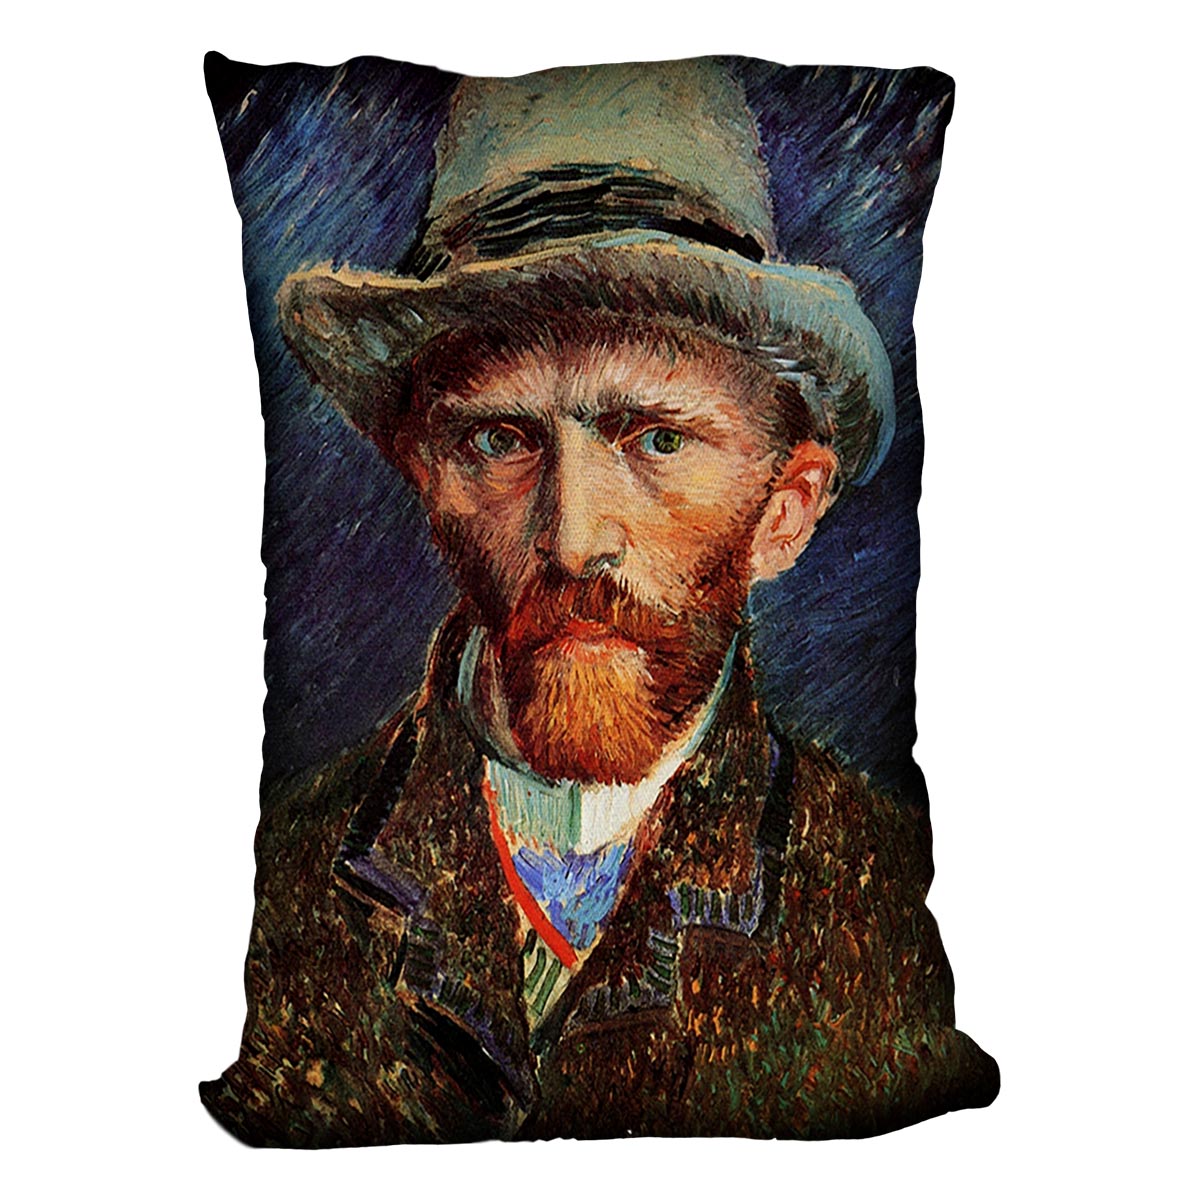 Self-Portrait with Grey Felt Hat by Van Gogh Cushion